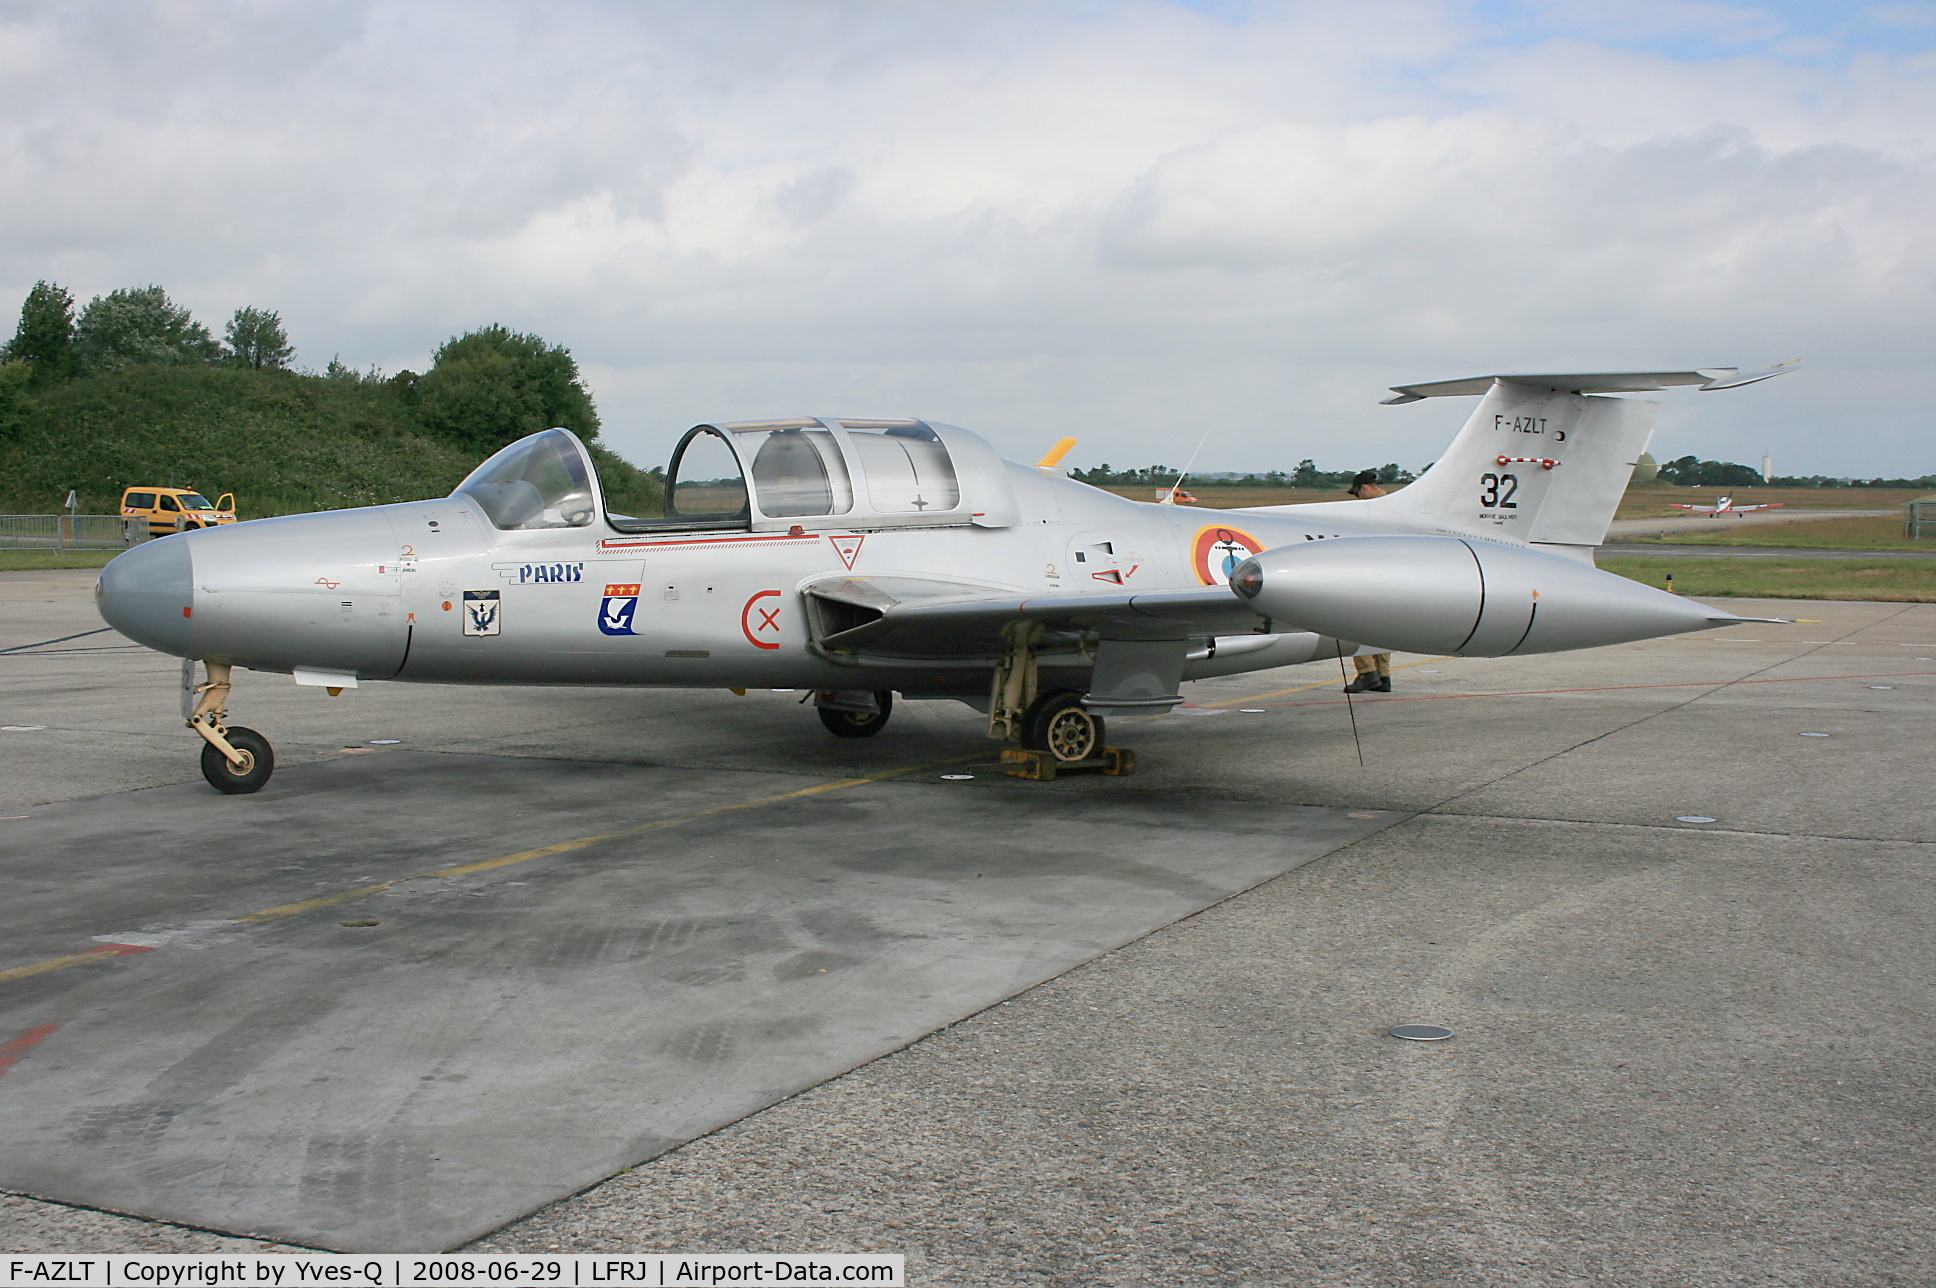 F-AZLT, Morane-Saulnier MS.760 Paris I C/N 32, Morane-Saulnier MS.760 Paris N°32, Landivisiau Naval Air Base (LFRJ)